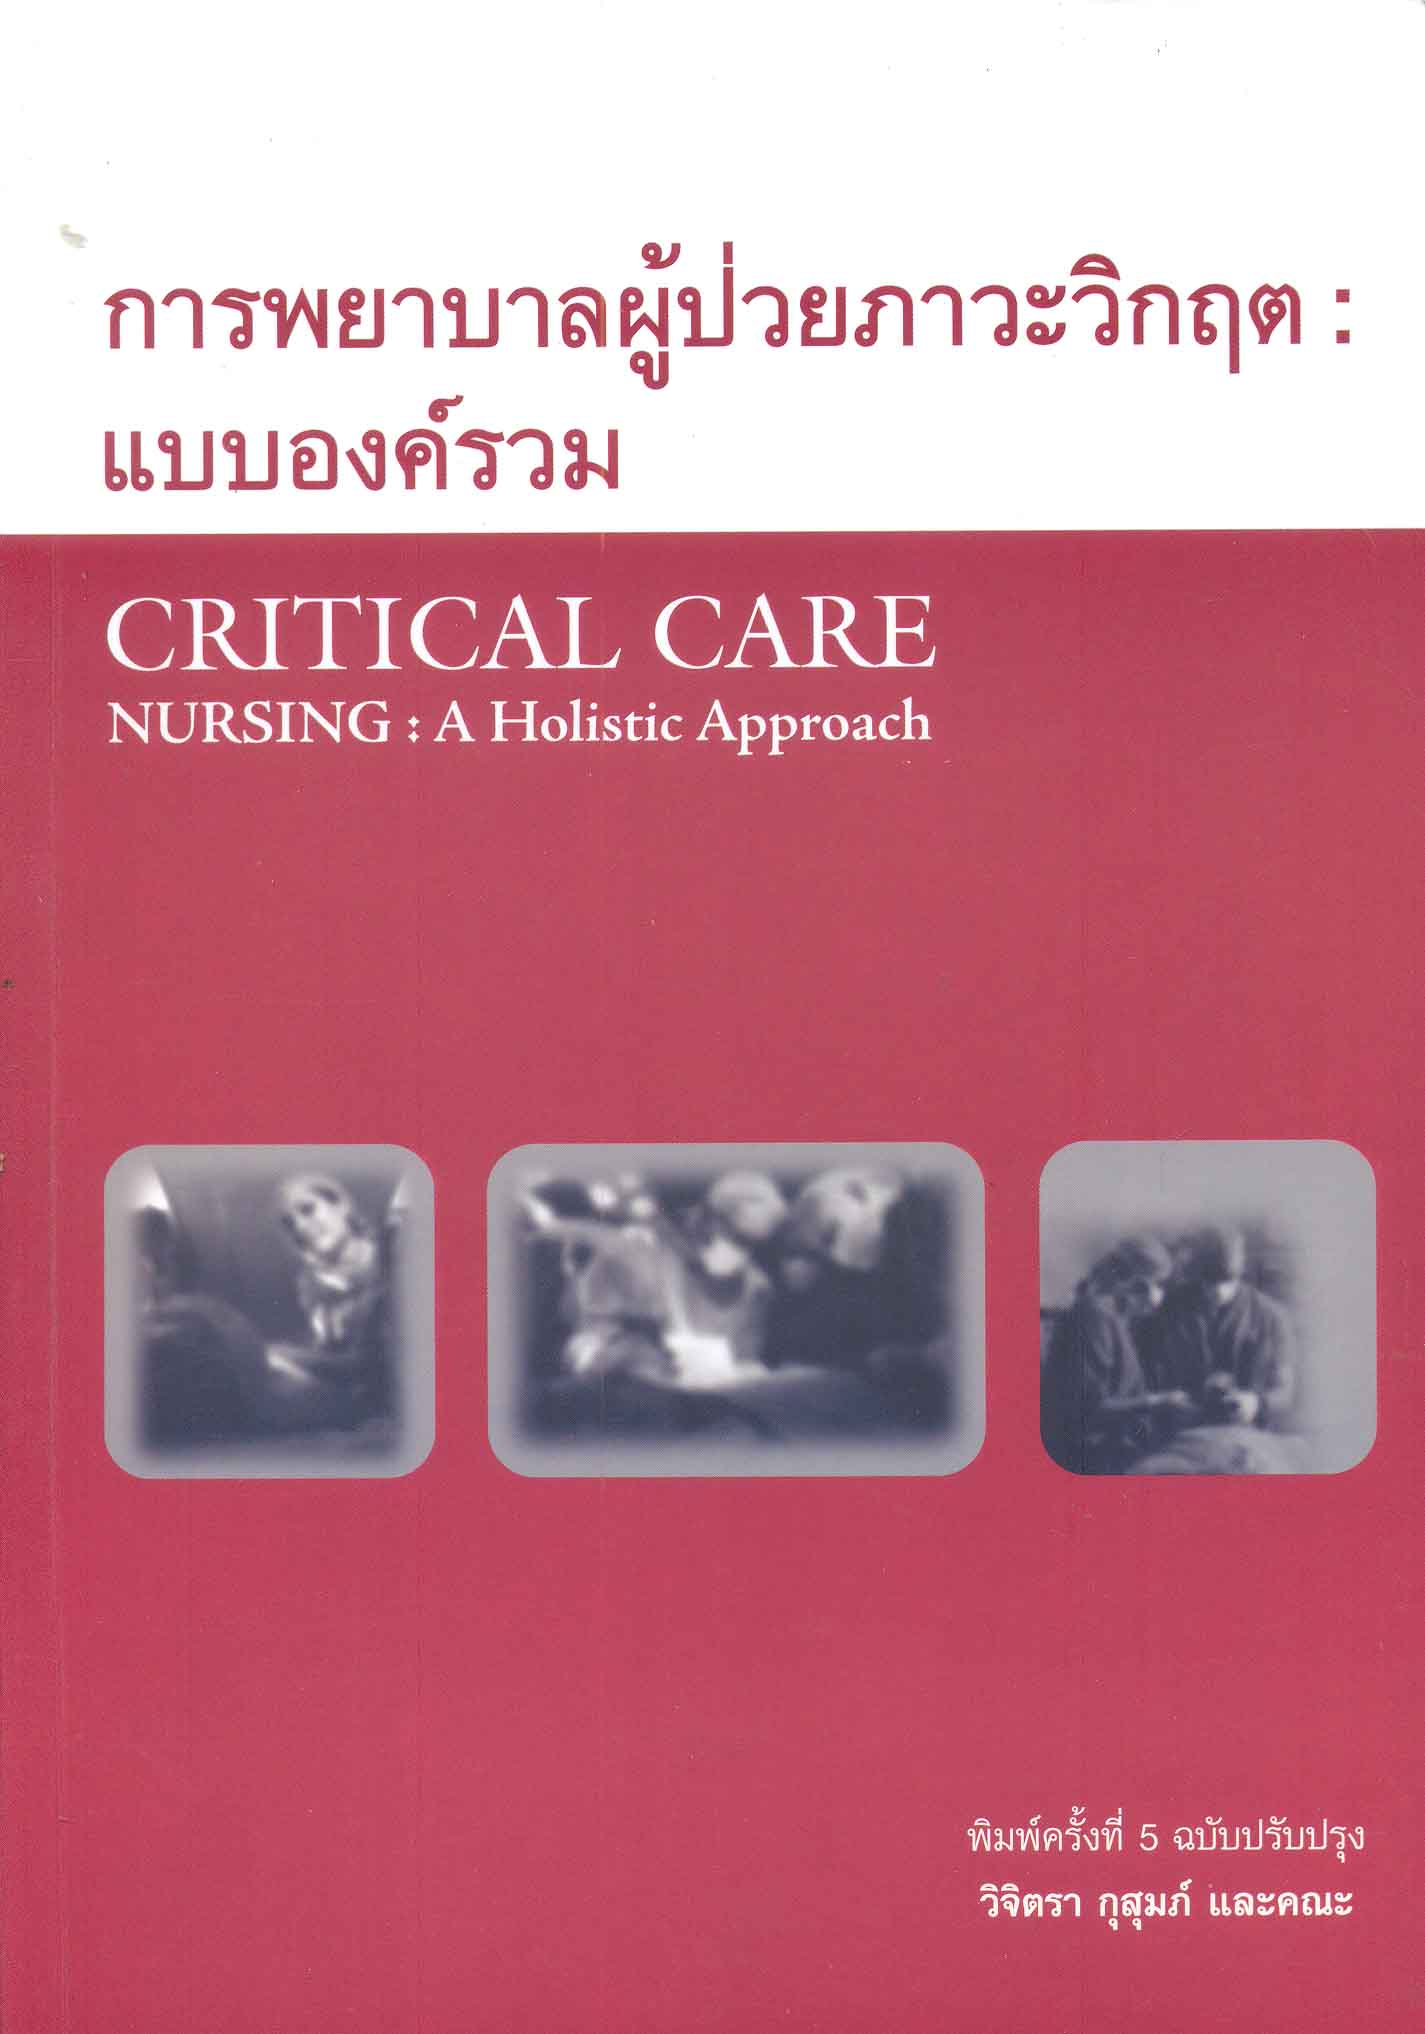 การพยาบาลผู้ป่วยภาวะวิกฤต : แบบองค์รวม = Critical care nursing : a holistic approach